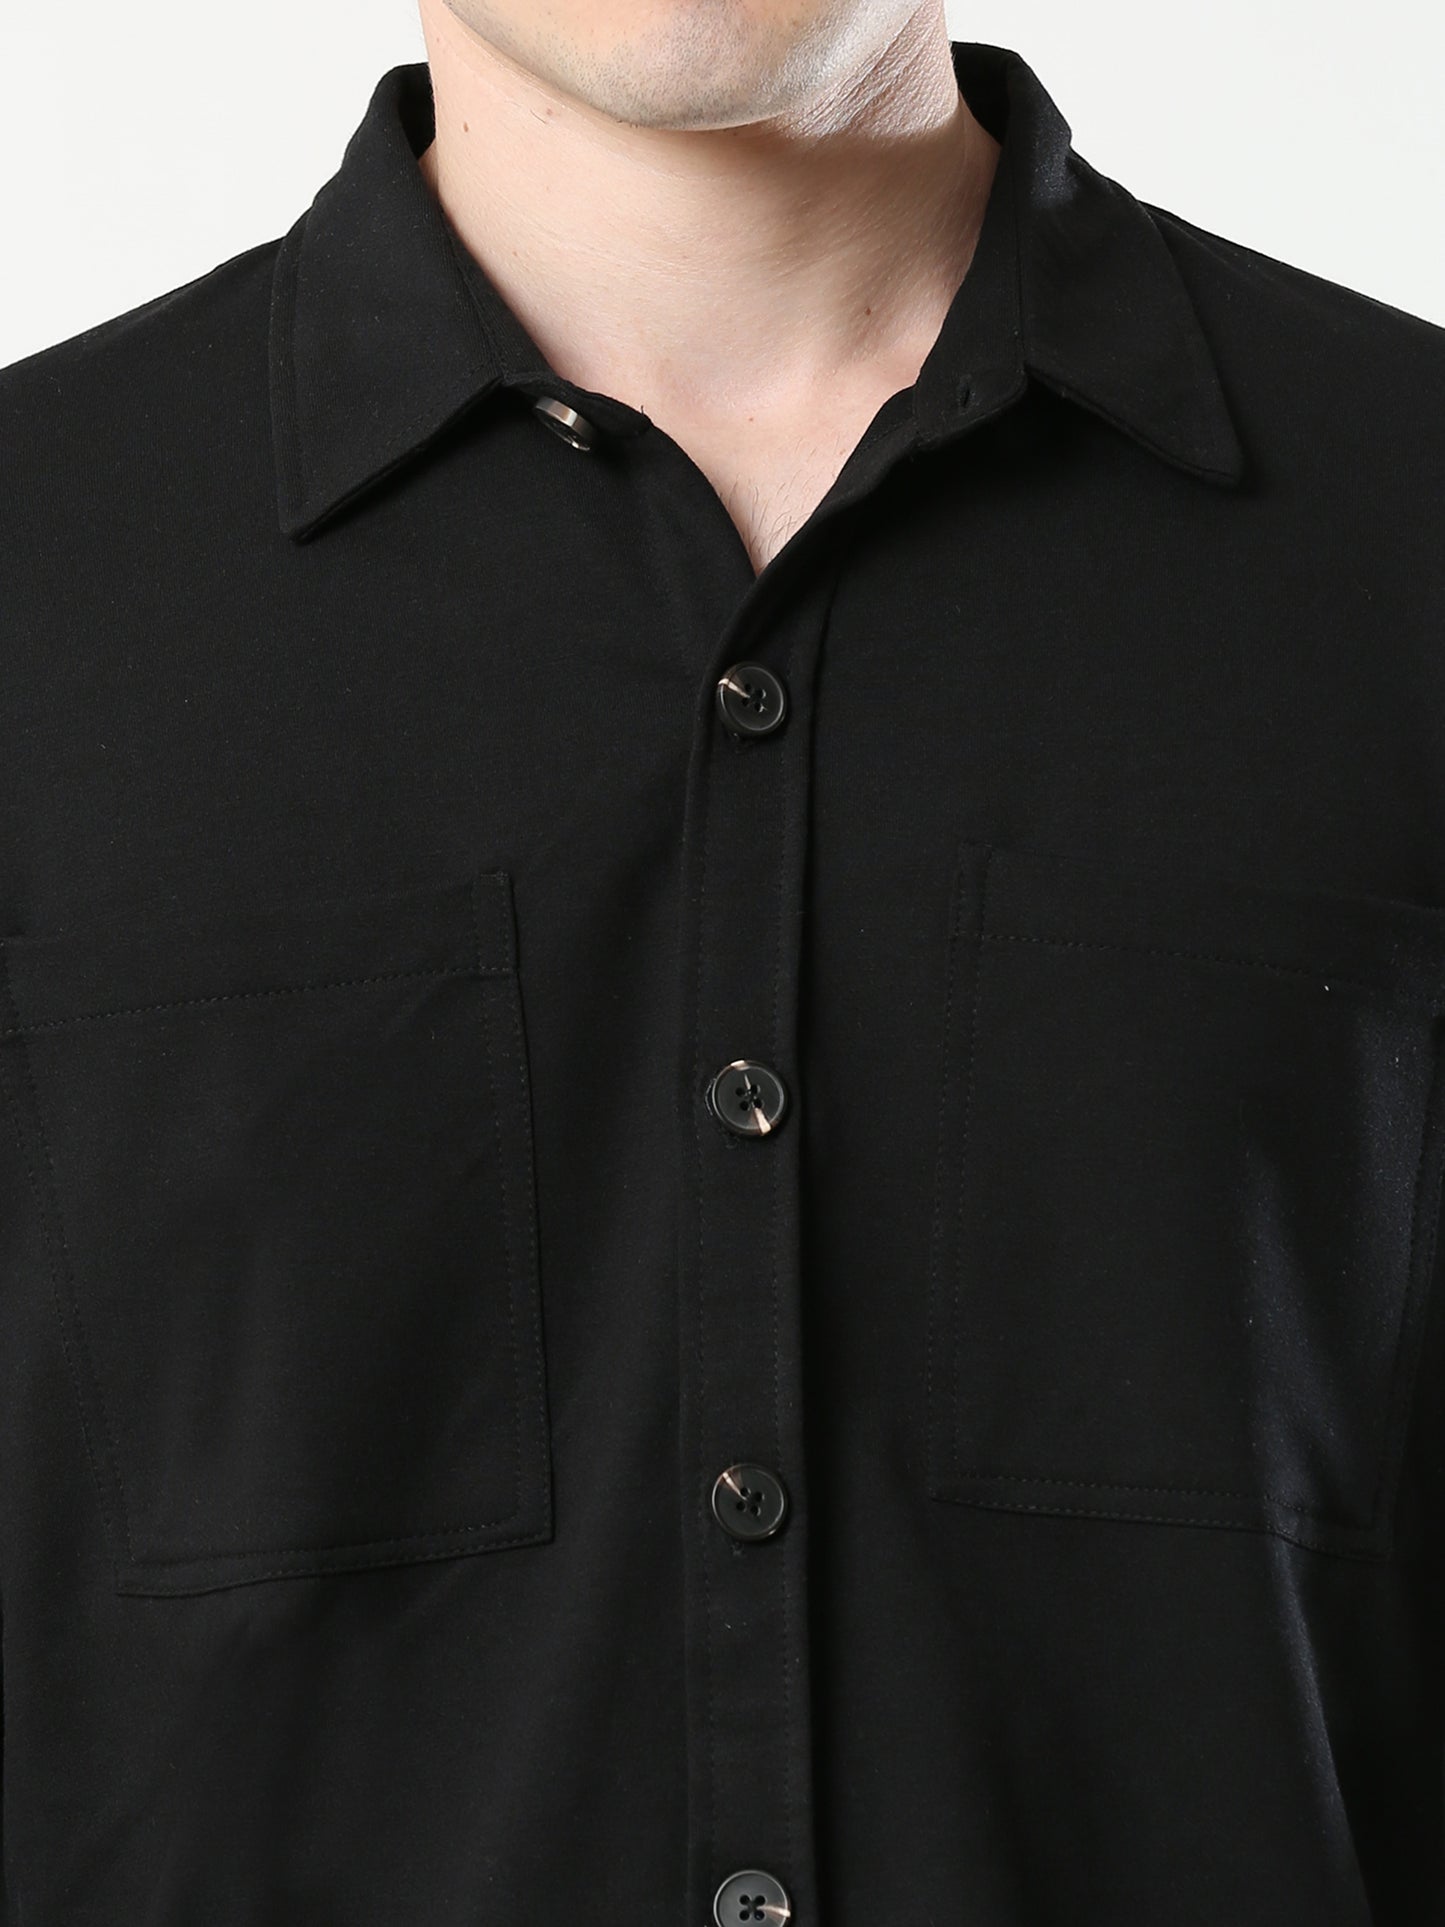 Black Double Pocket Royal Knit overshirt - UNISEX